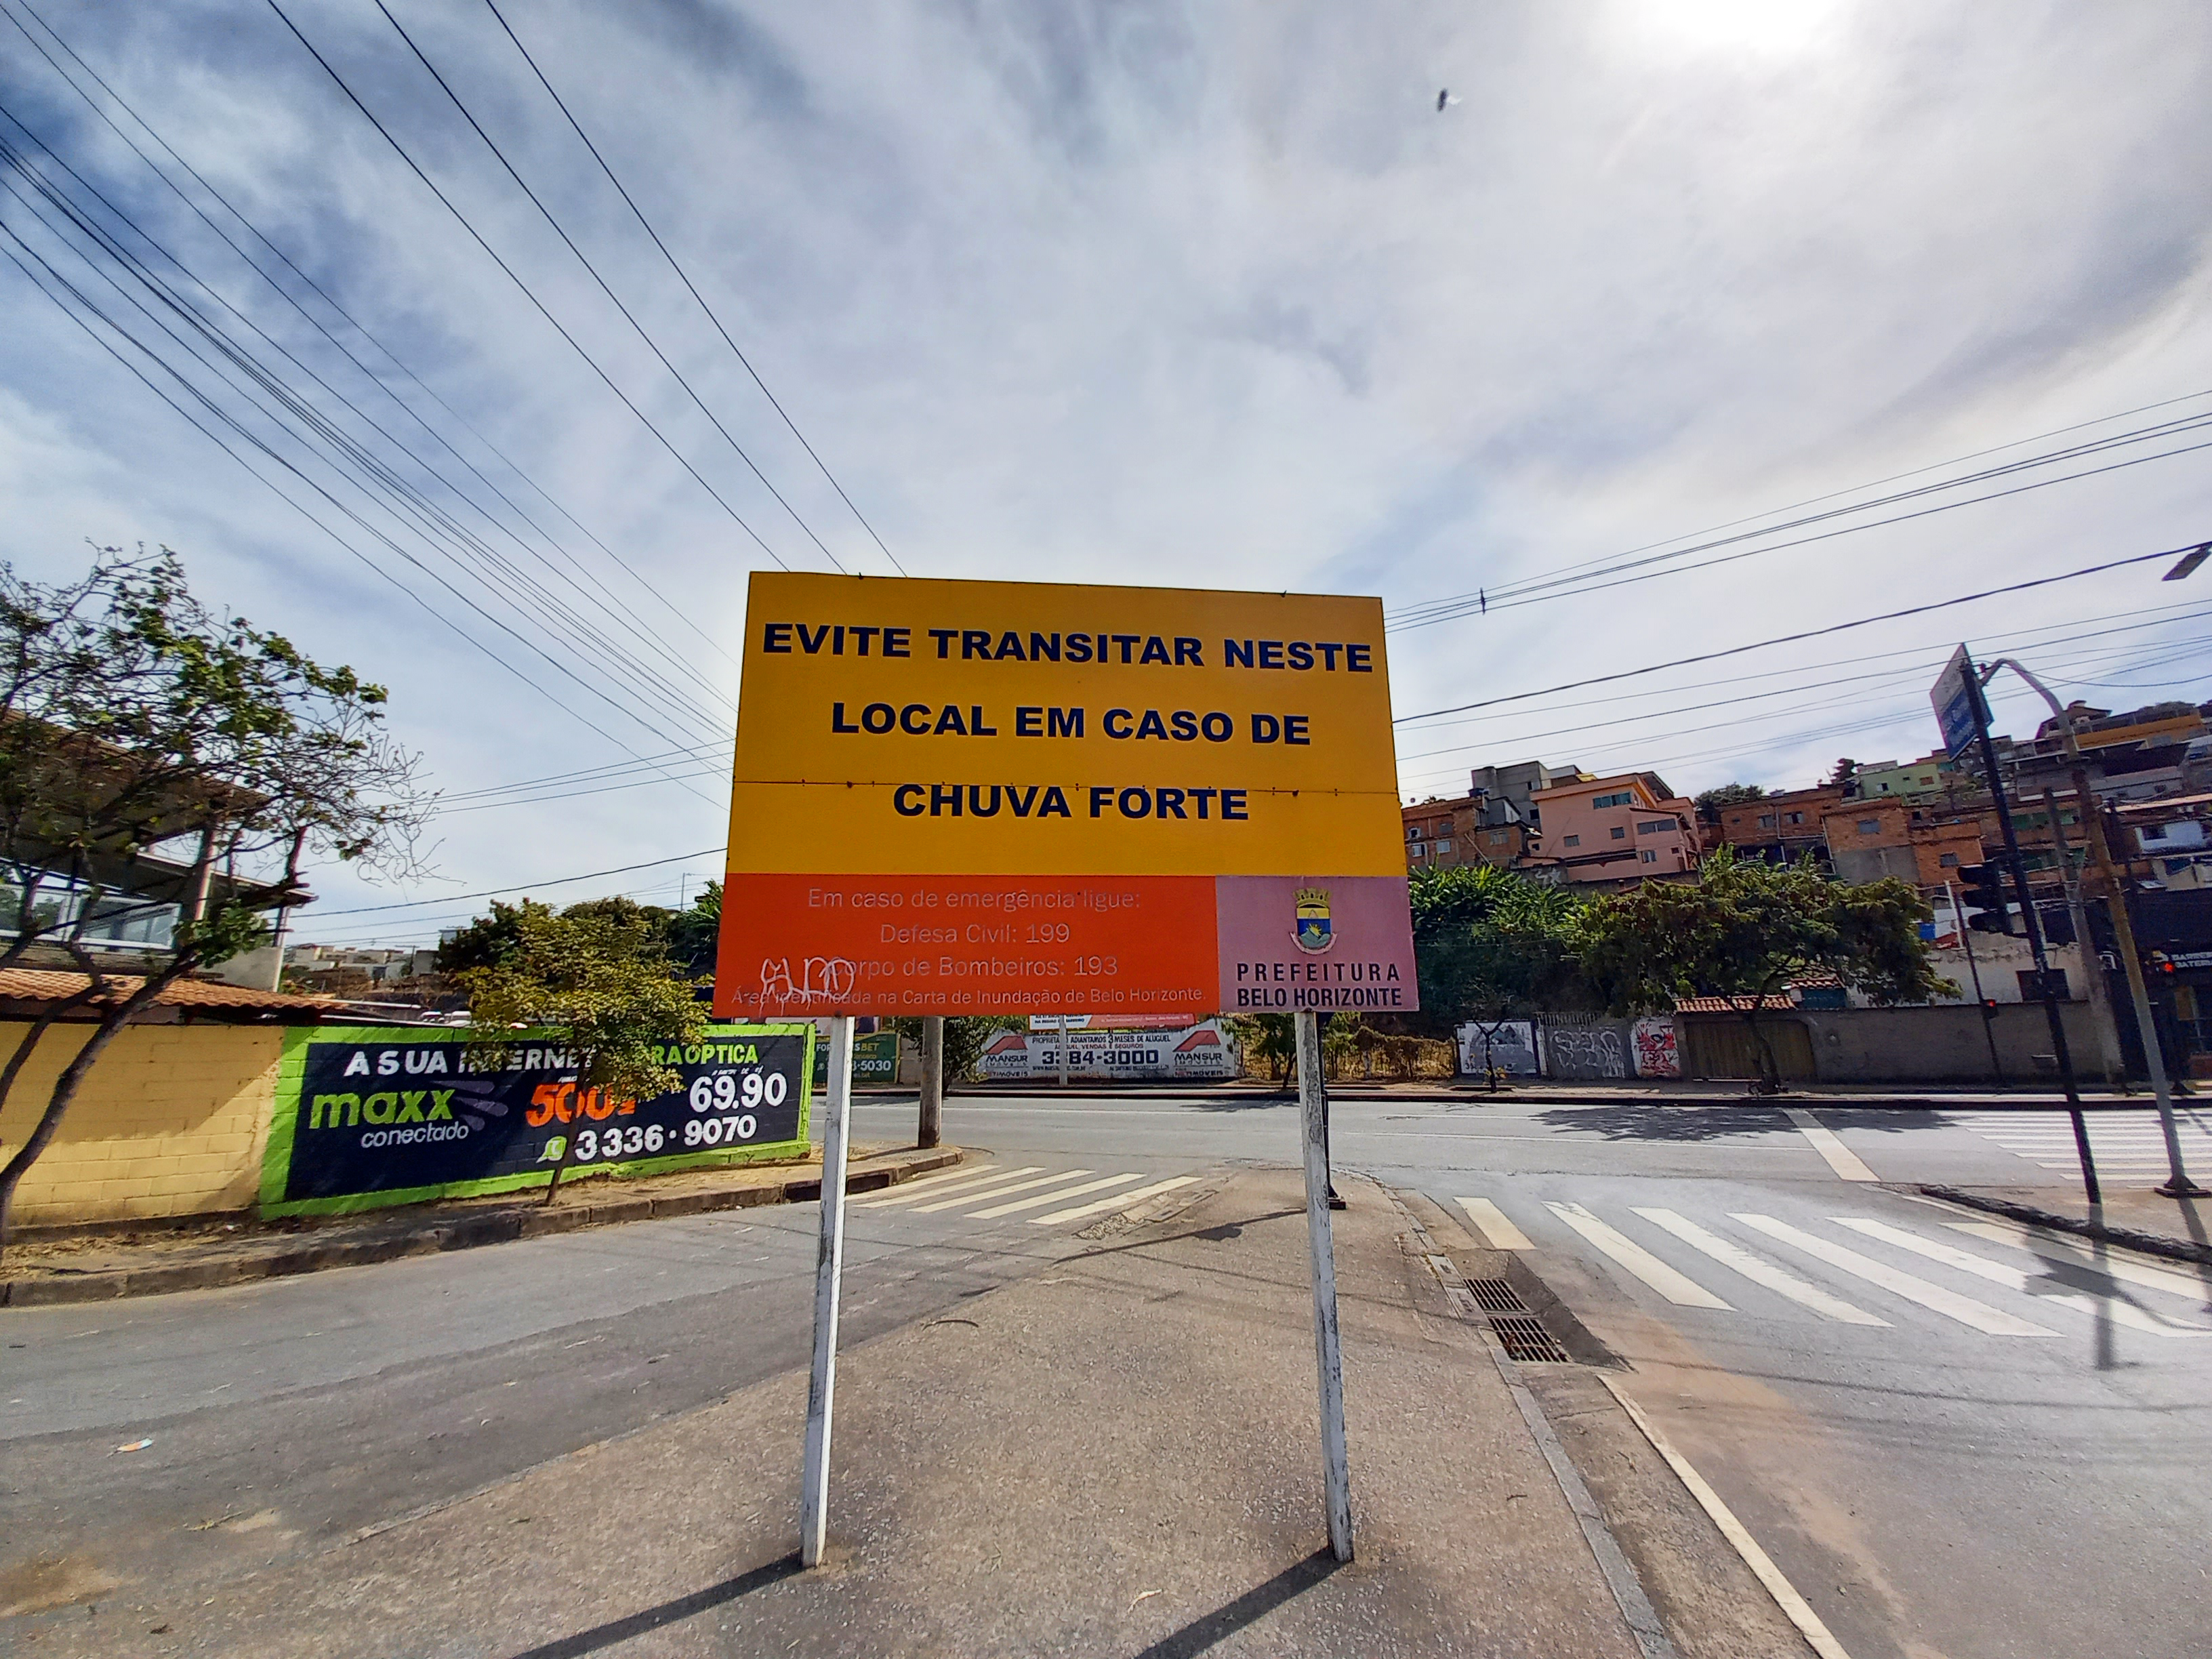 Foto diúrna da avenida Tereza Cristina. Em primeiro plano há uma placa amarela onde está escrito: "Evite transitar neste local em caso de chuva forte".